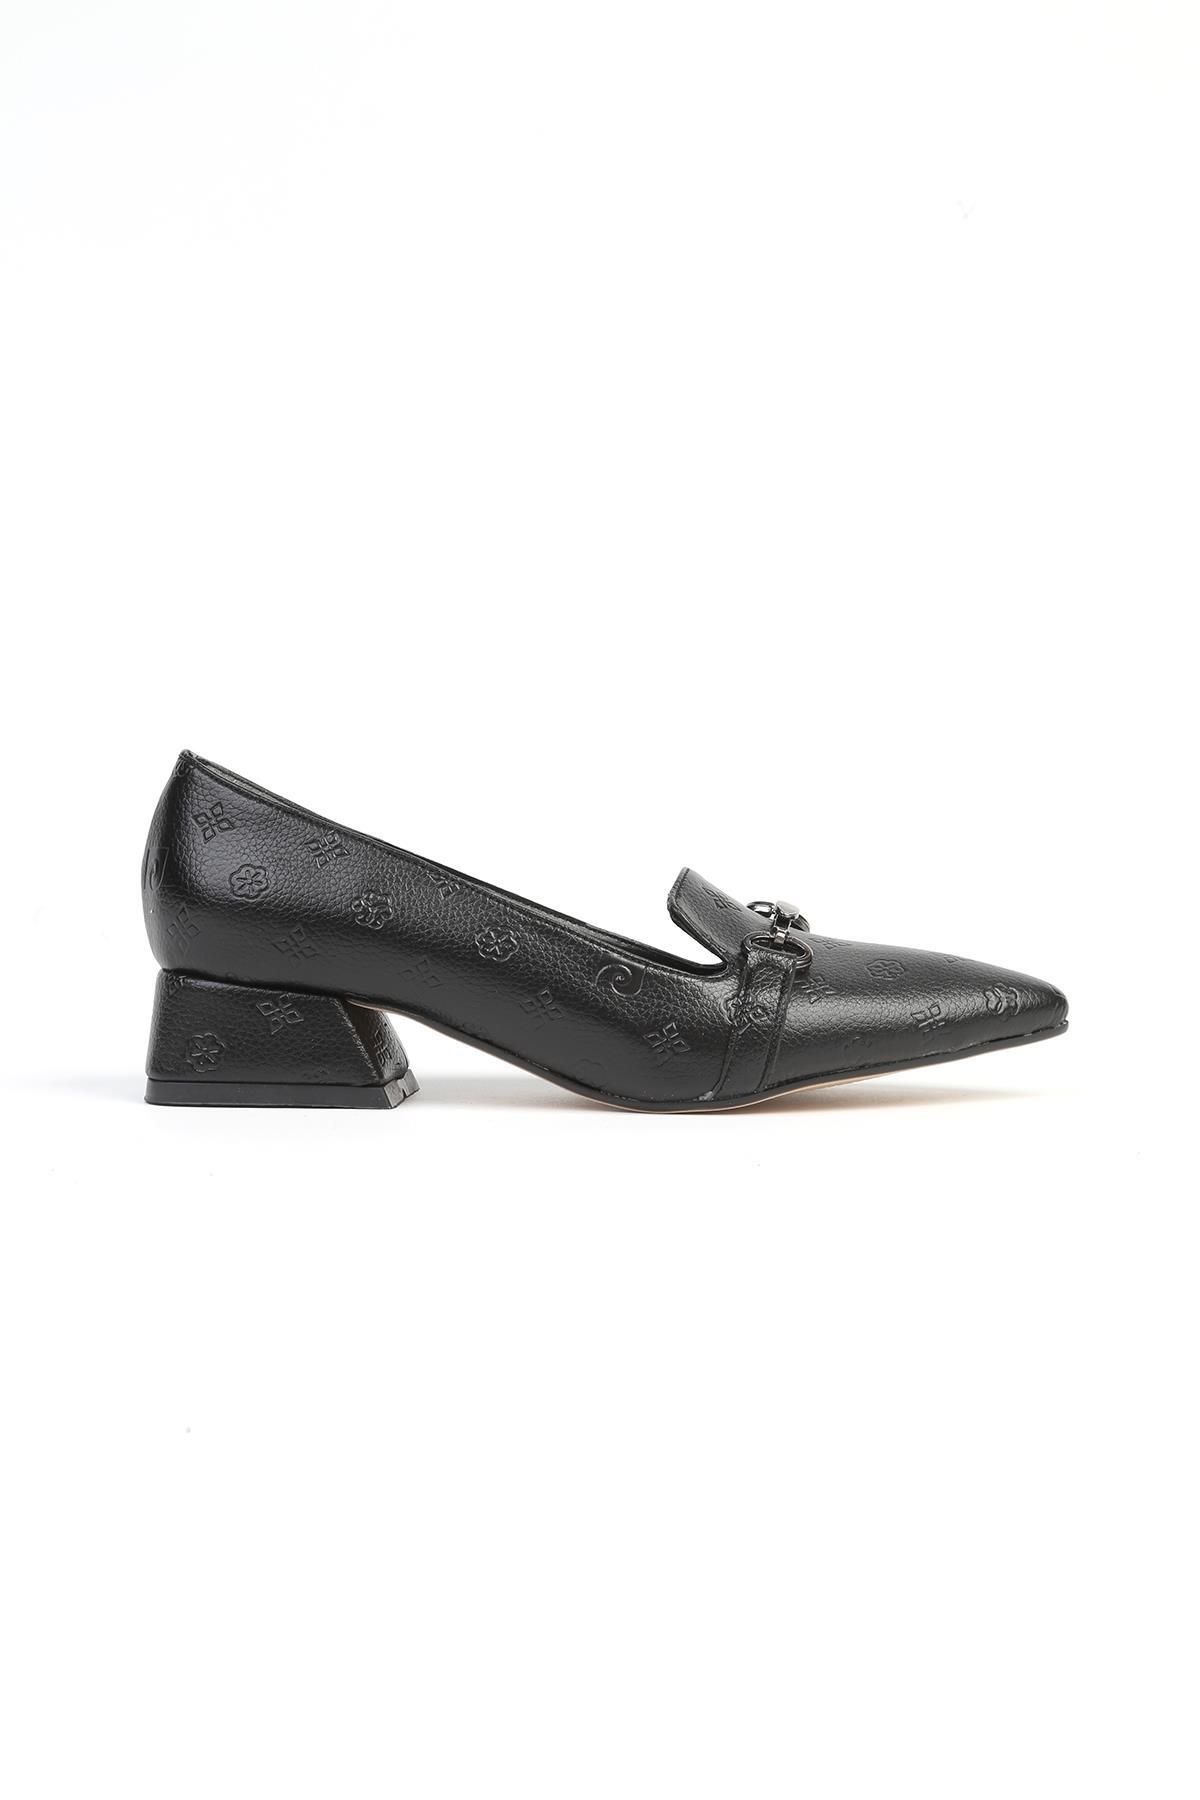 Pierre Cardin ® | PC-52567 - 3478 Siyah Baskılı - Kadın Topuklu Ayakkabı